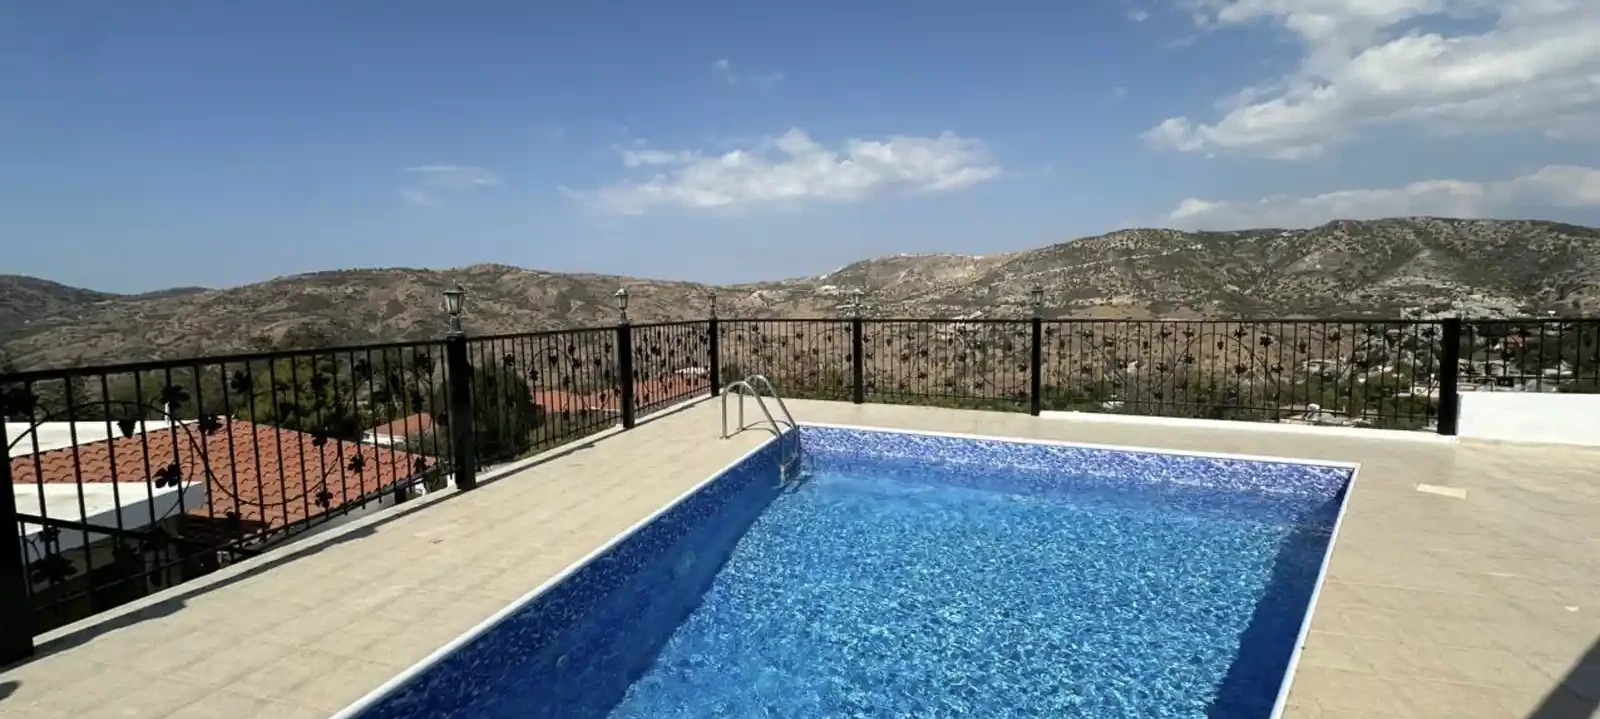 4-bedroom villa to rent €2.500, image 1